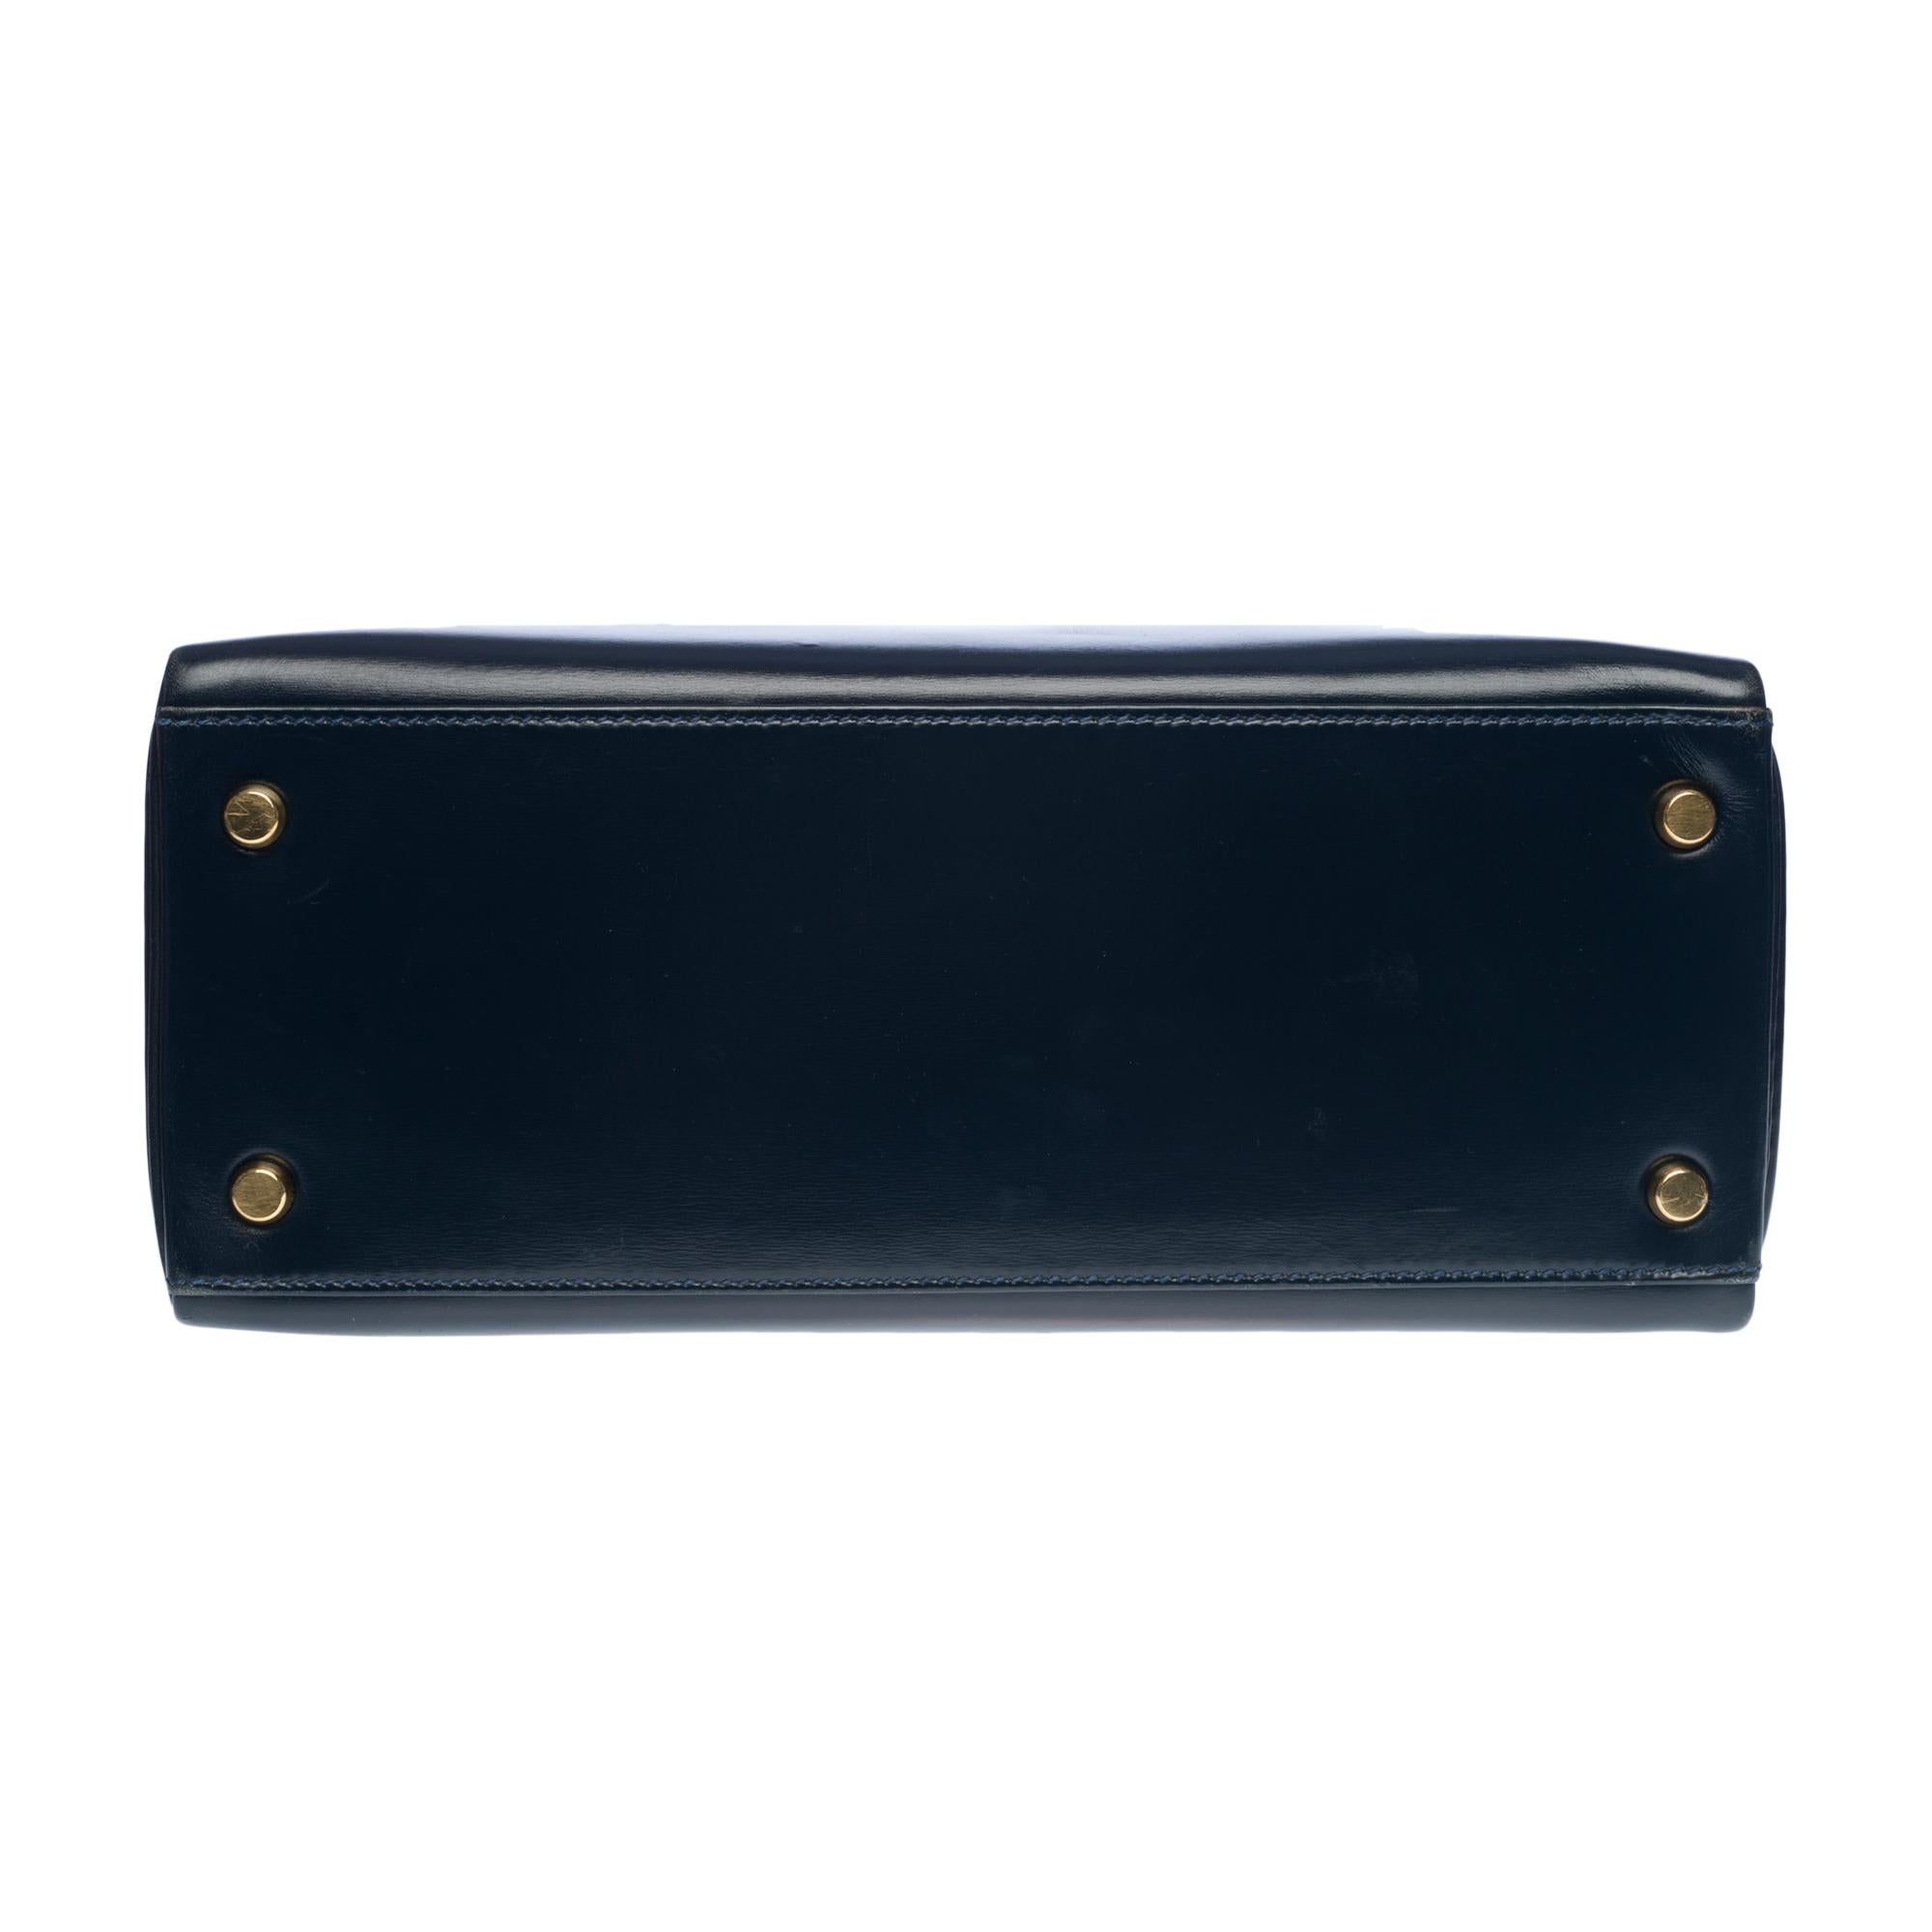 Rare Hermes Kelly 28 retourne handbag double strap in Navy blue box calfskin, GHW 2